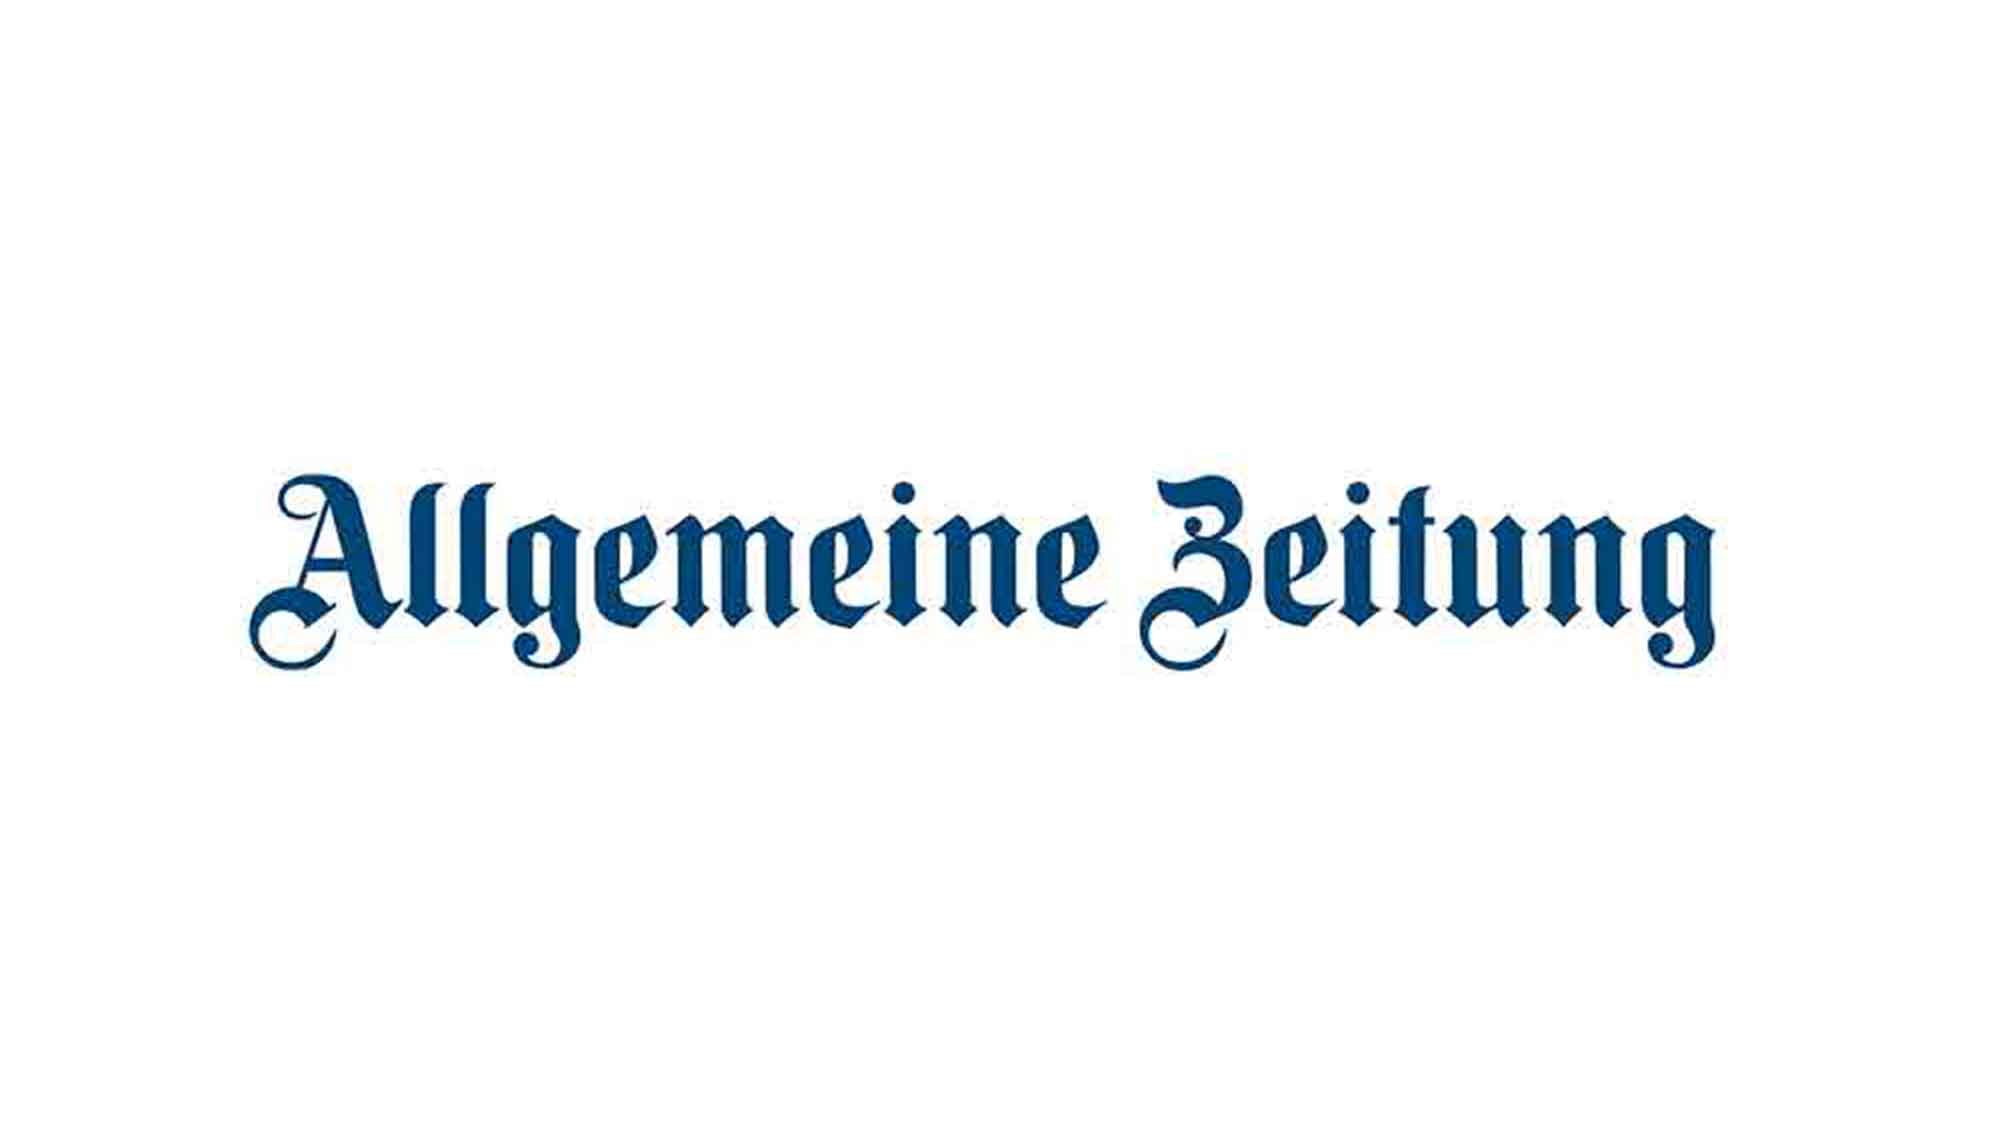 Allgemeine Zeitung Mainz, wieder eine Enttäuschung, Kommentar von Elisabeth Saller zur Weltsynode